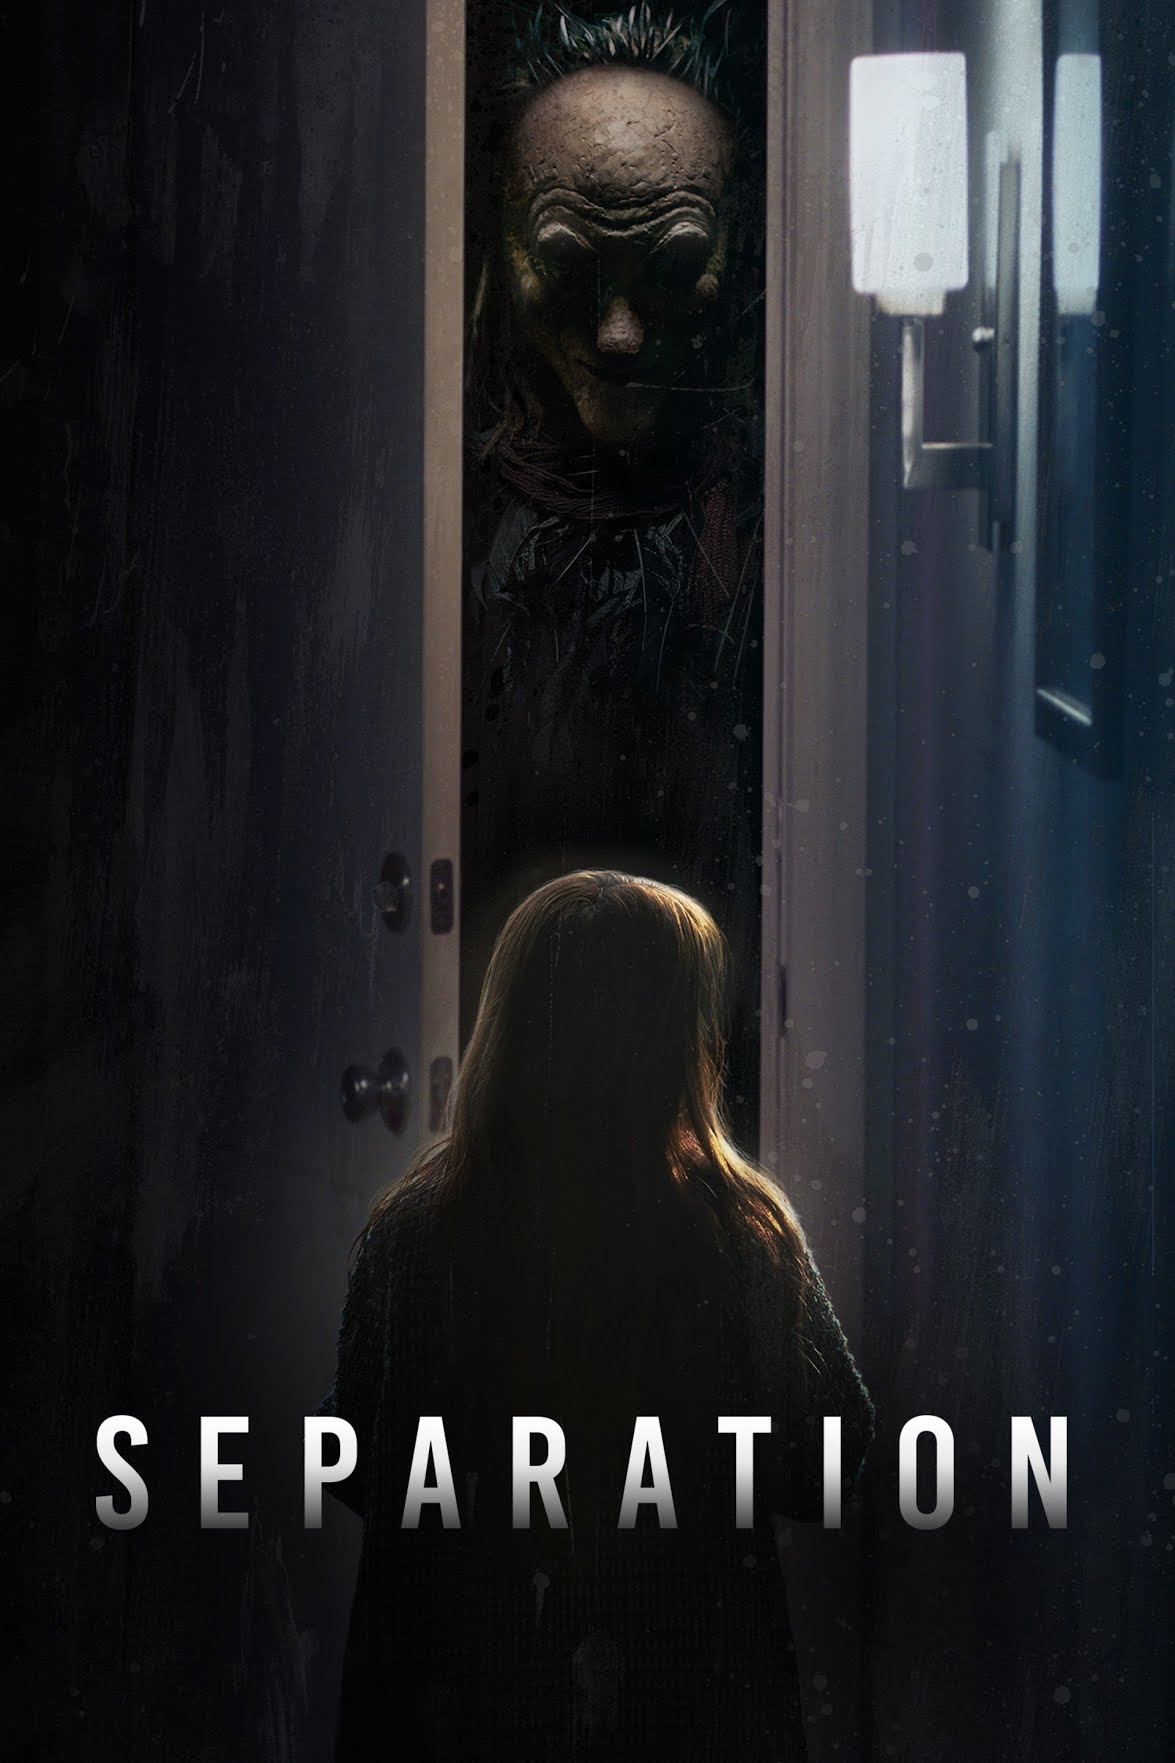 [ฝรั่ง] Separation (2021) วิโยคมรณะ [1080p] [พากย์ไทย 2.0 + เสียงอังกฤษ DTS] [บรรยายไทย + อังกฤษ] [เสียงไทยมาสเตอร์ + ซับไทย] [USERLOAD]